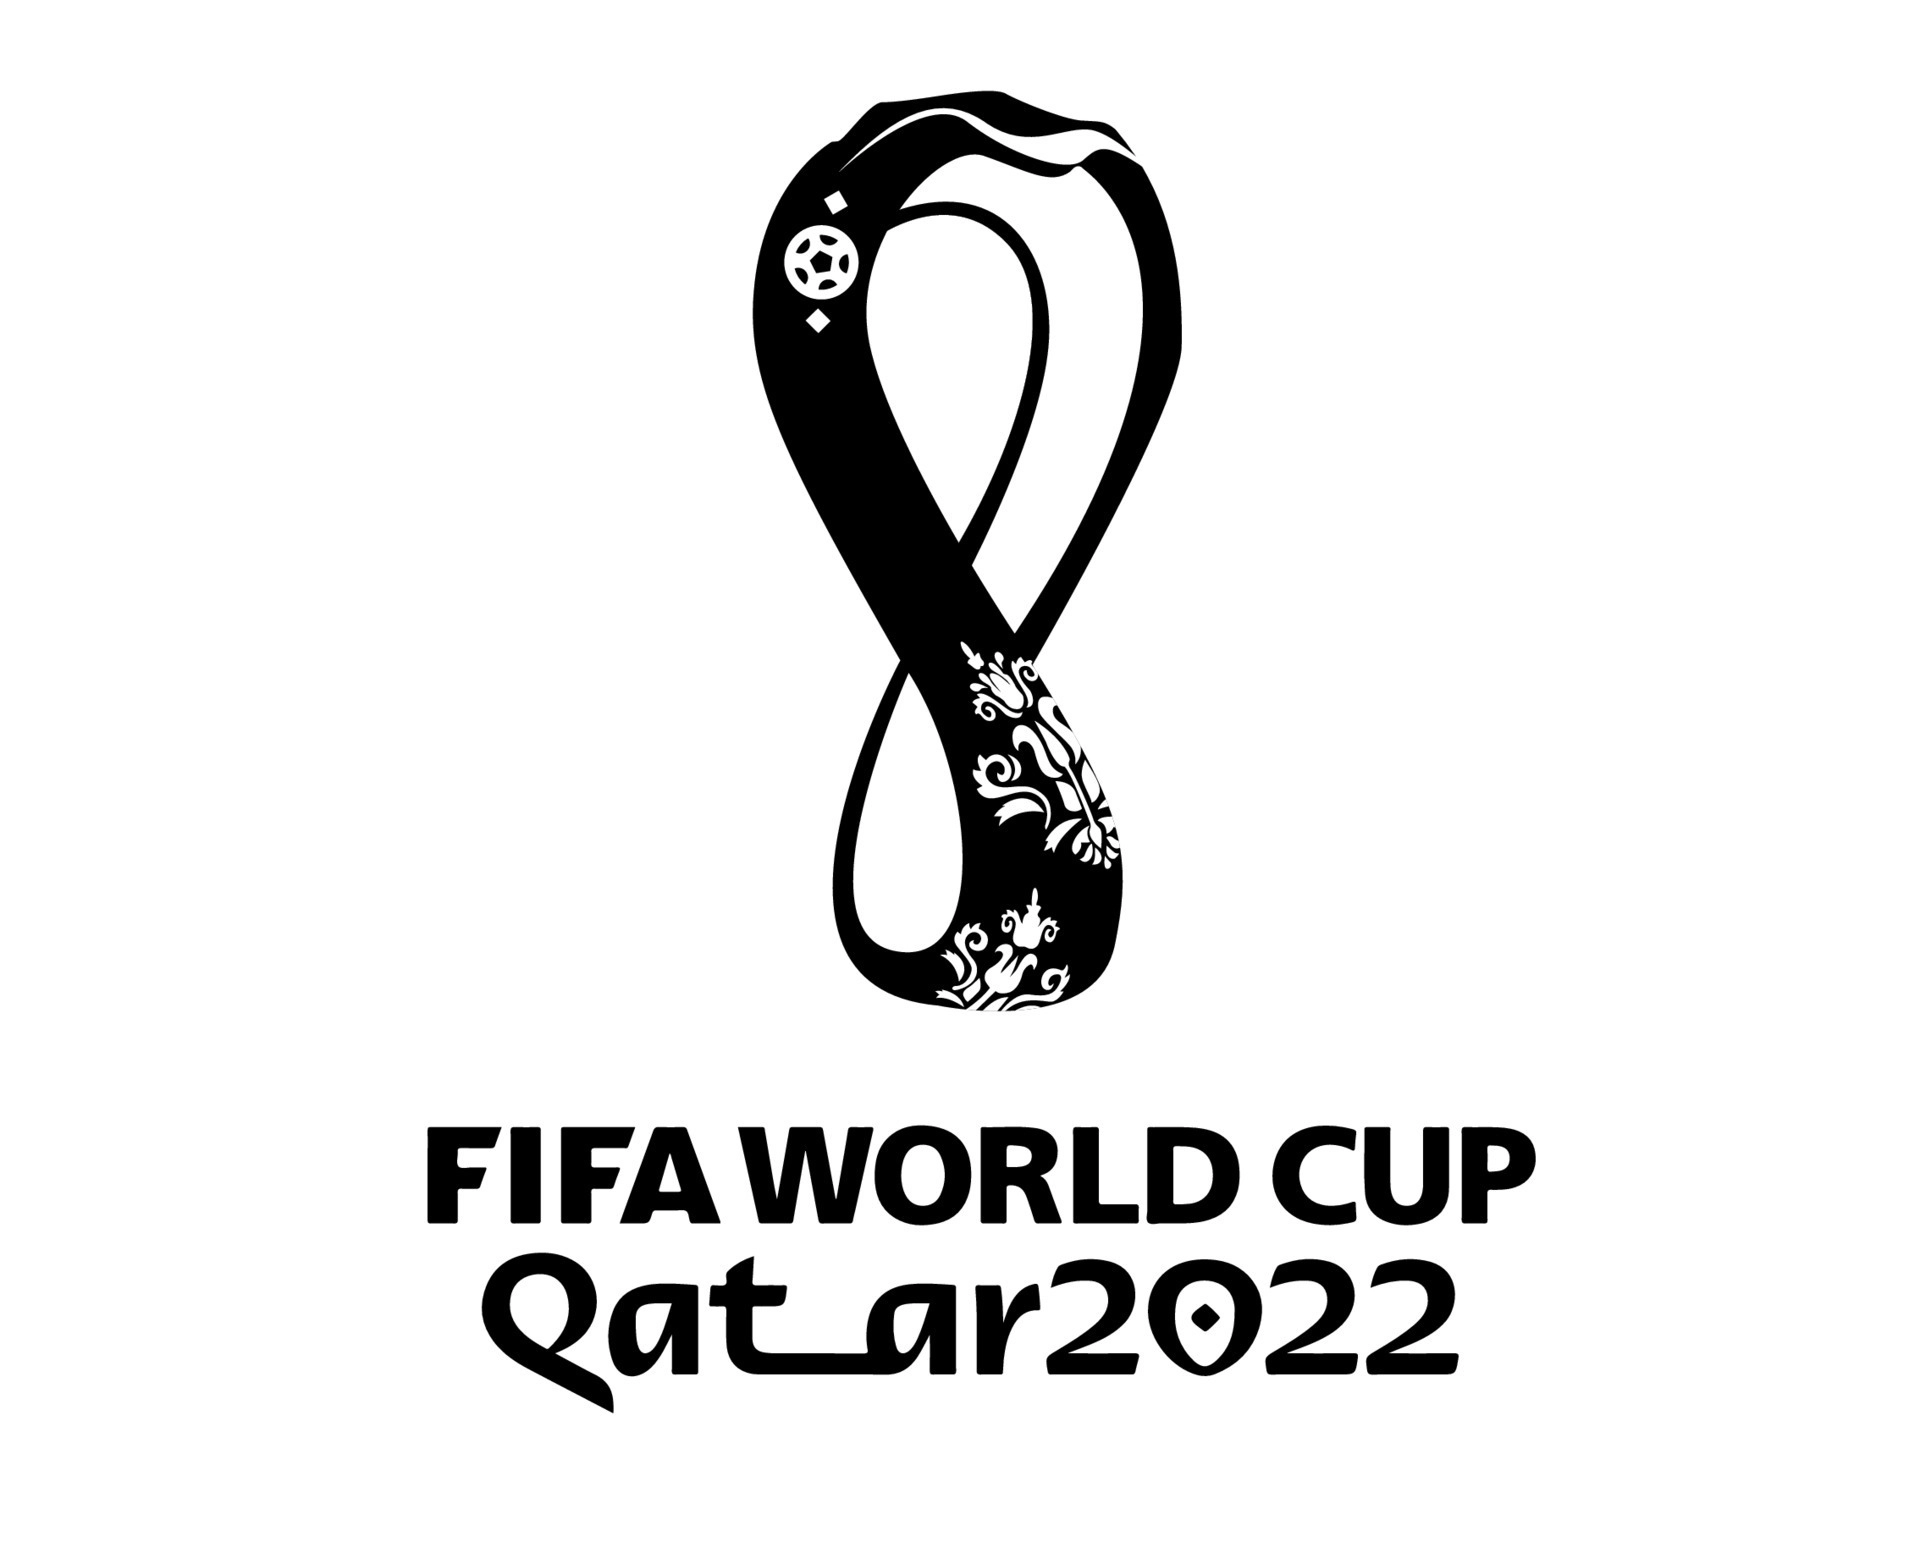 Trận đấu bóng đá lớn nhất hành tinh - World Cup FIFA 2022 sẽ diễn ra tại Qatar! Chưa bao giờ một sự kiện thể thao lại được mong chờ đến thế. Đặt trọn niềm tin vào các đội tuyển yêu thích và dõi theo những trận đấu hấp dẫn nhất qua ảnh liên quan!